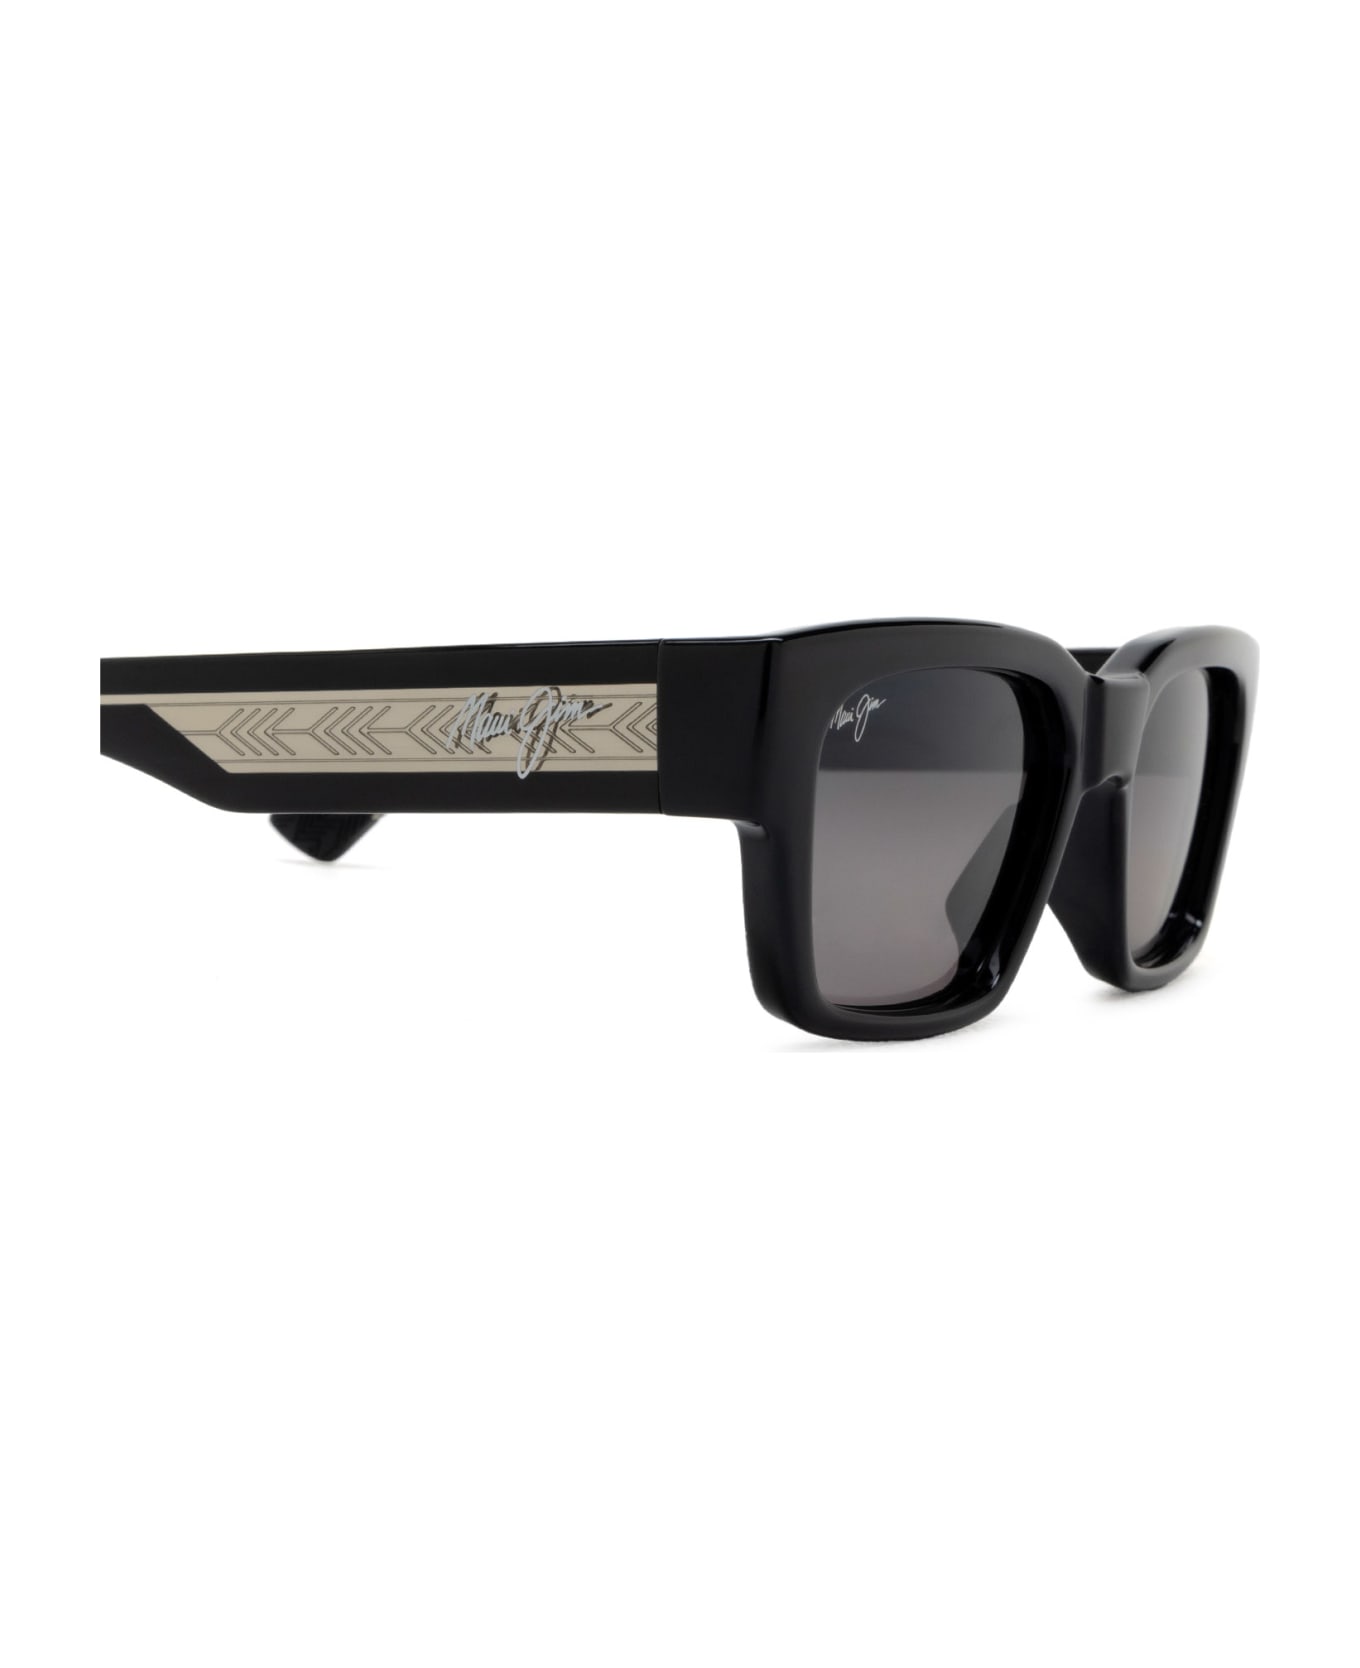 Maui Jim Mj642 Shiny Black W/trans Light Grey Sunglasses - Shiny Black W/Trans Light Grey